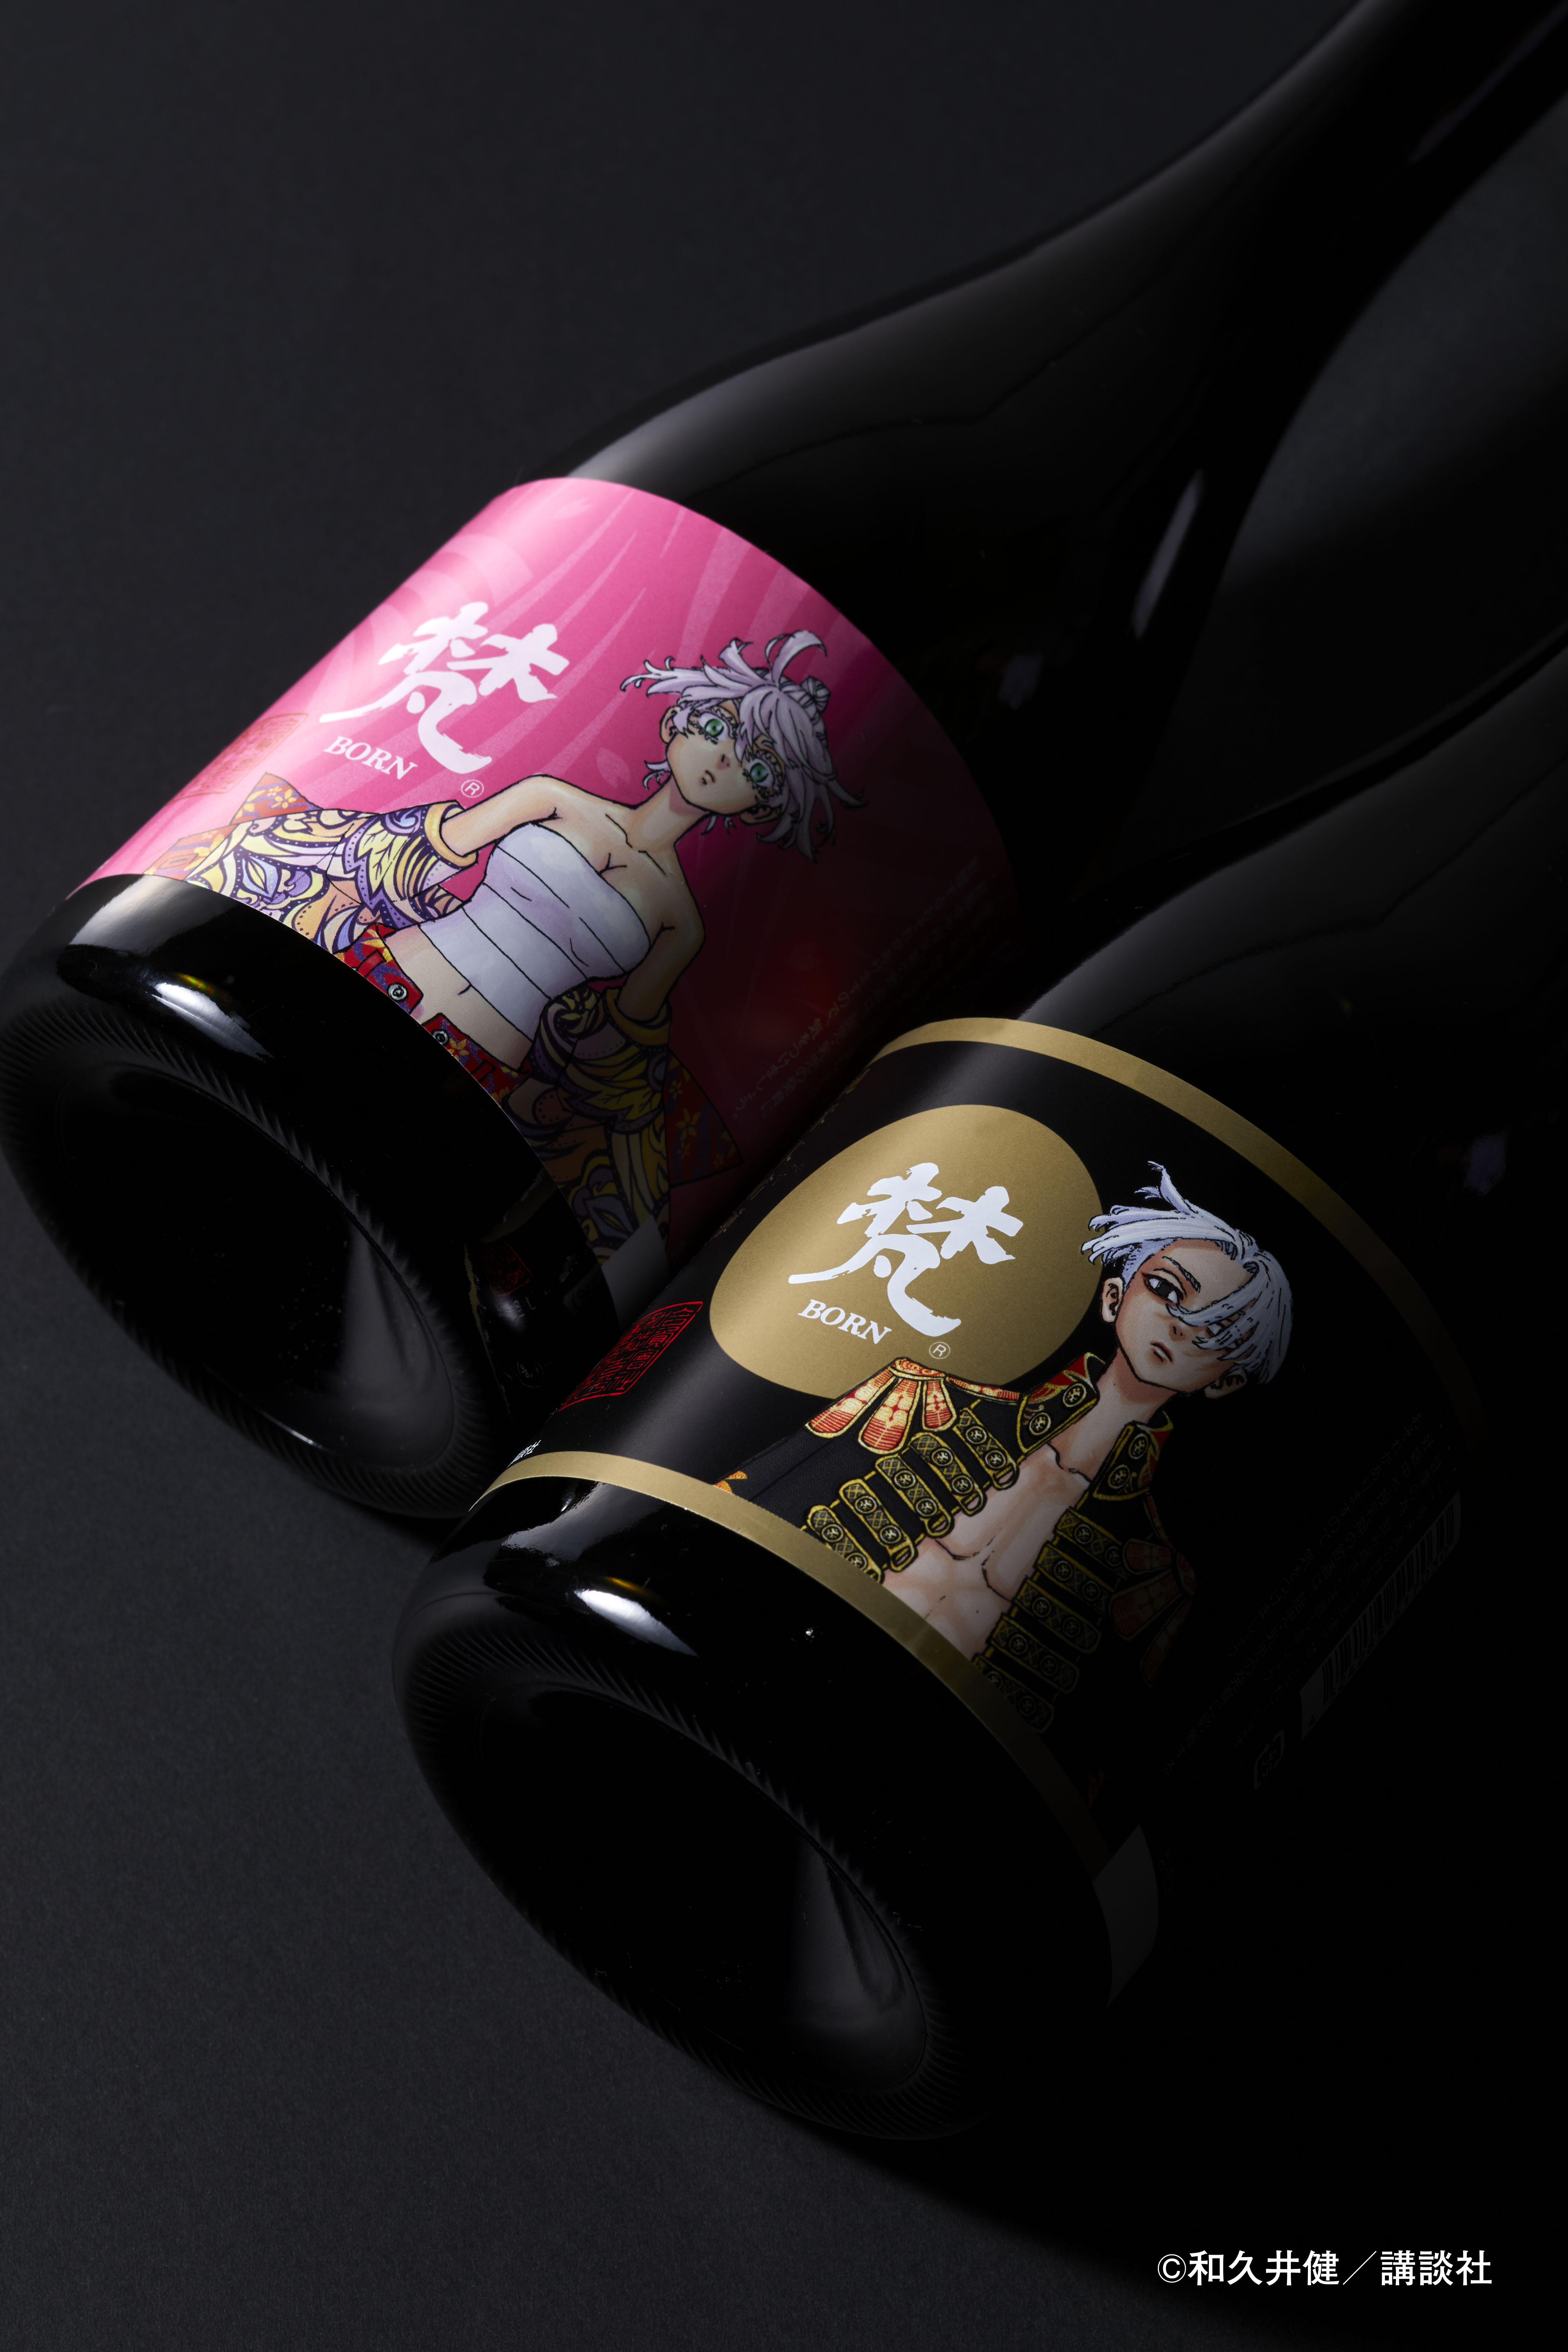 梵×東京卍リベンジャーズ コラボ商品 新発売のご案内 | 日本酒「梵」の